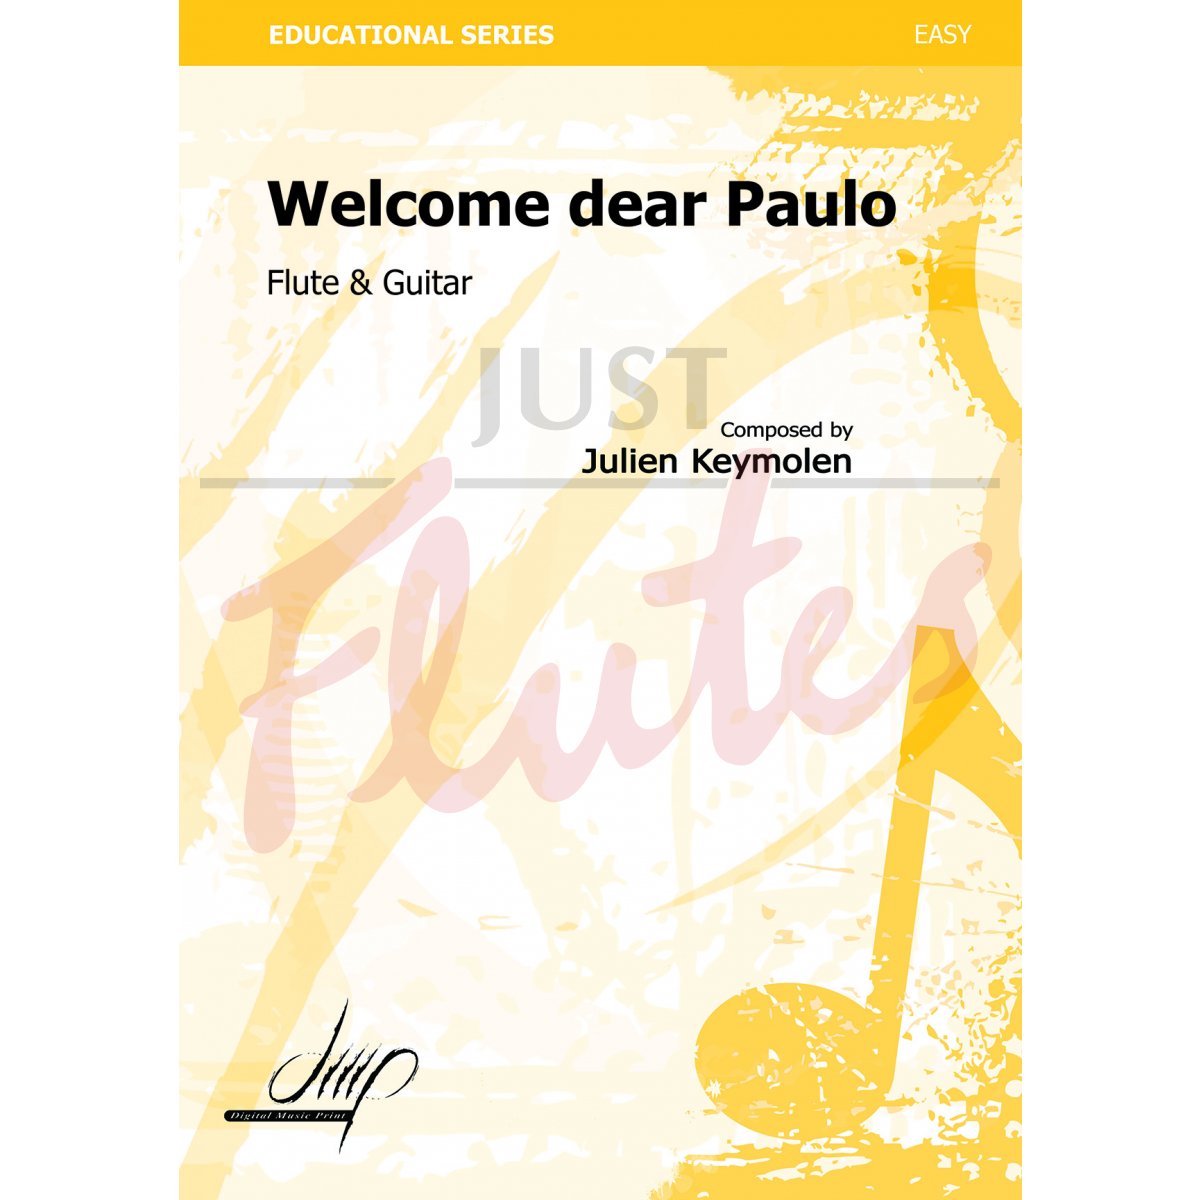 Welcome dear Paulo